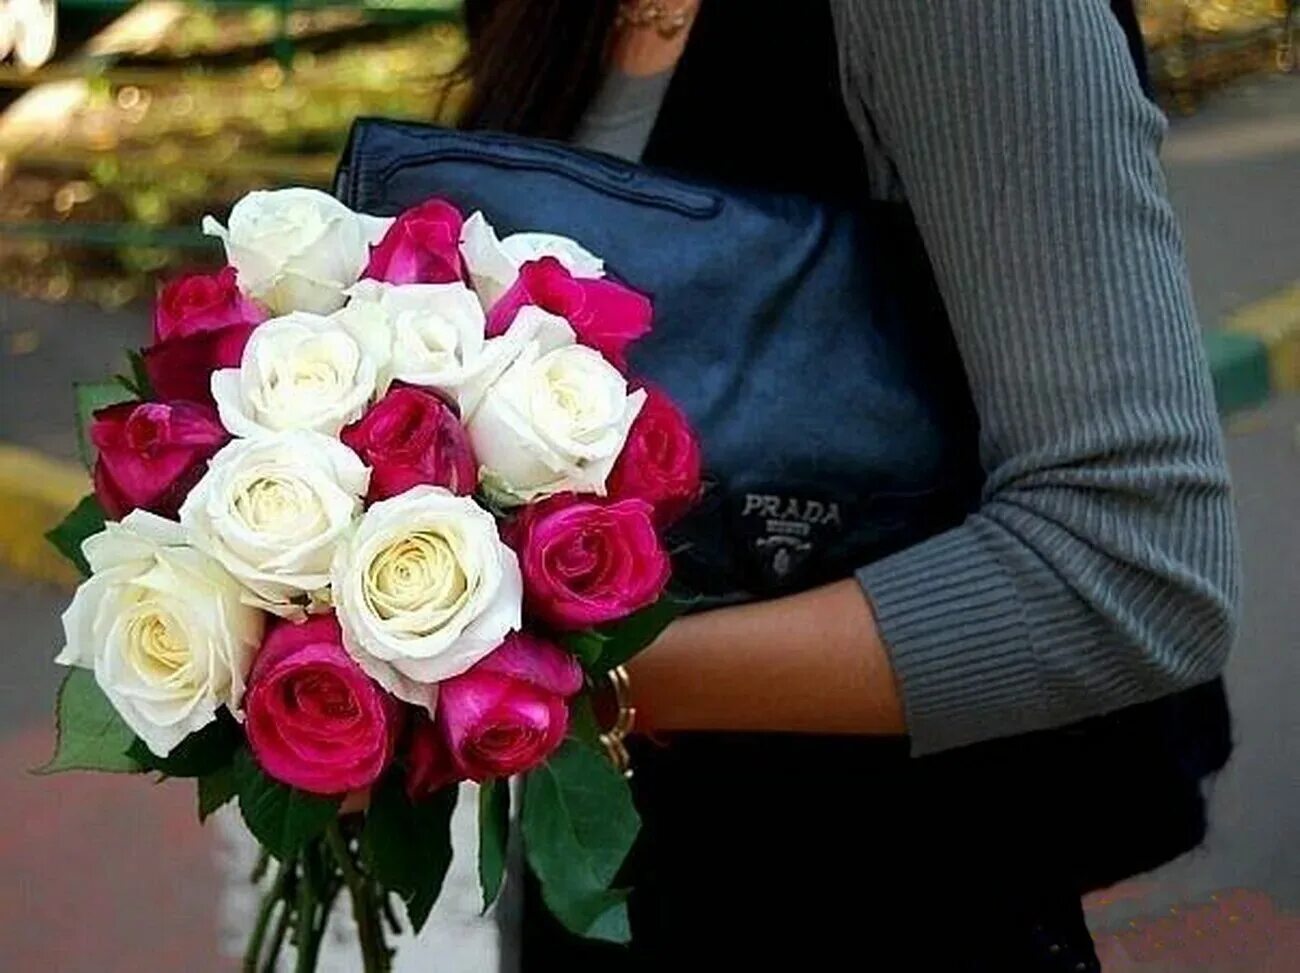 1415 роз. Букет цветов для девушки. Девушка с букетом роз. Красивый букет в руках. Букет цветов красивый для девушки.